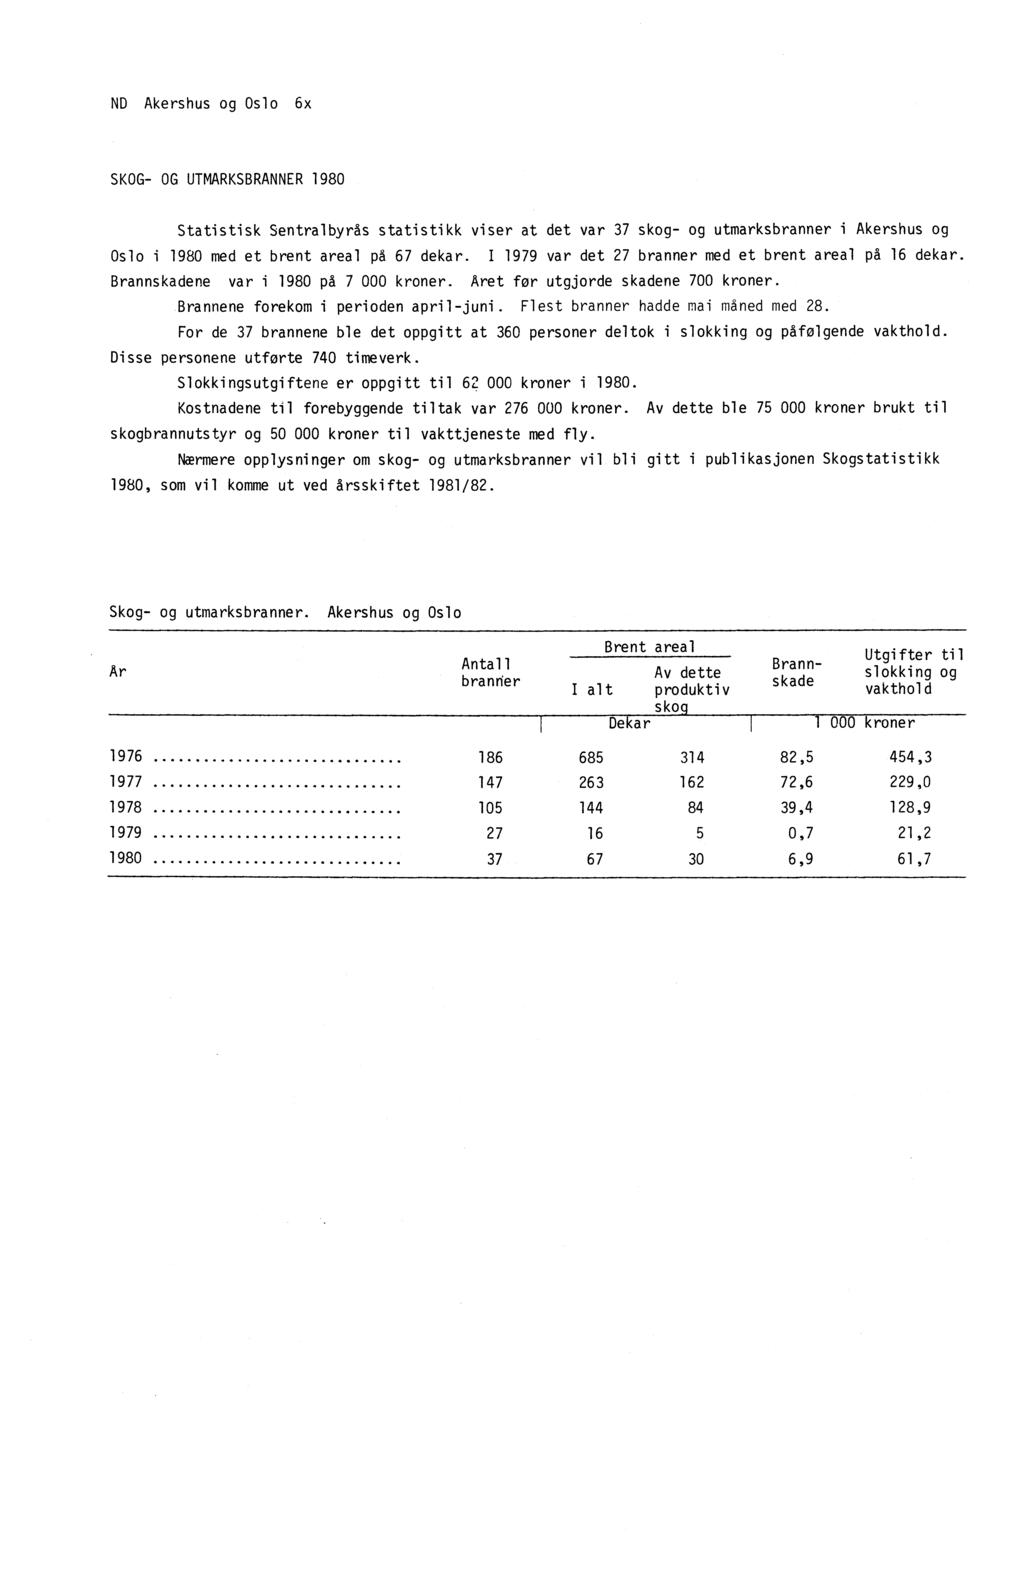 ND Akershus og Oslo 6x SKOG- OG UTMARKSBRANNER 1980 Statistisk Sentralbyrås statistikk viser at det var 37 skog- og utmarksbranner i Akershus og Oslo i 1980 med et brent areal på 67 dekar.